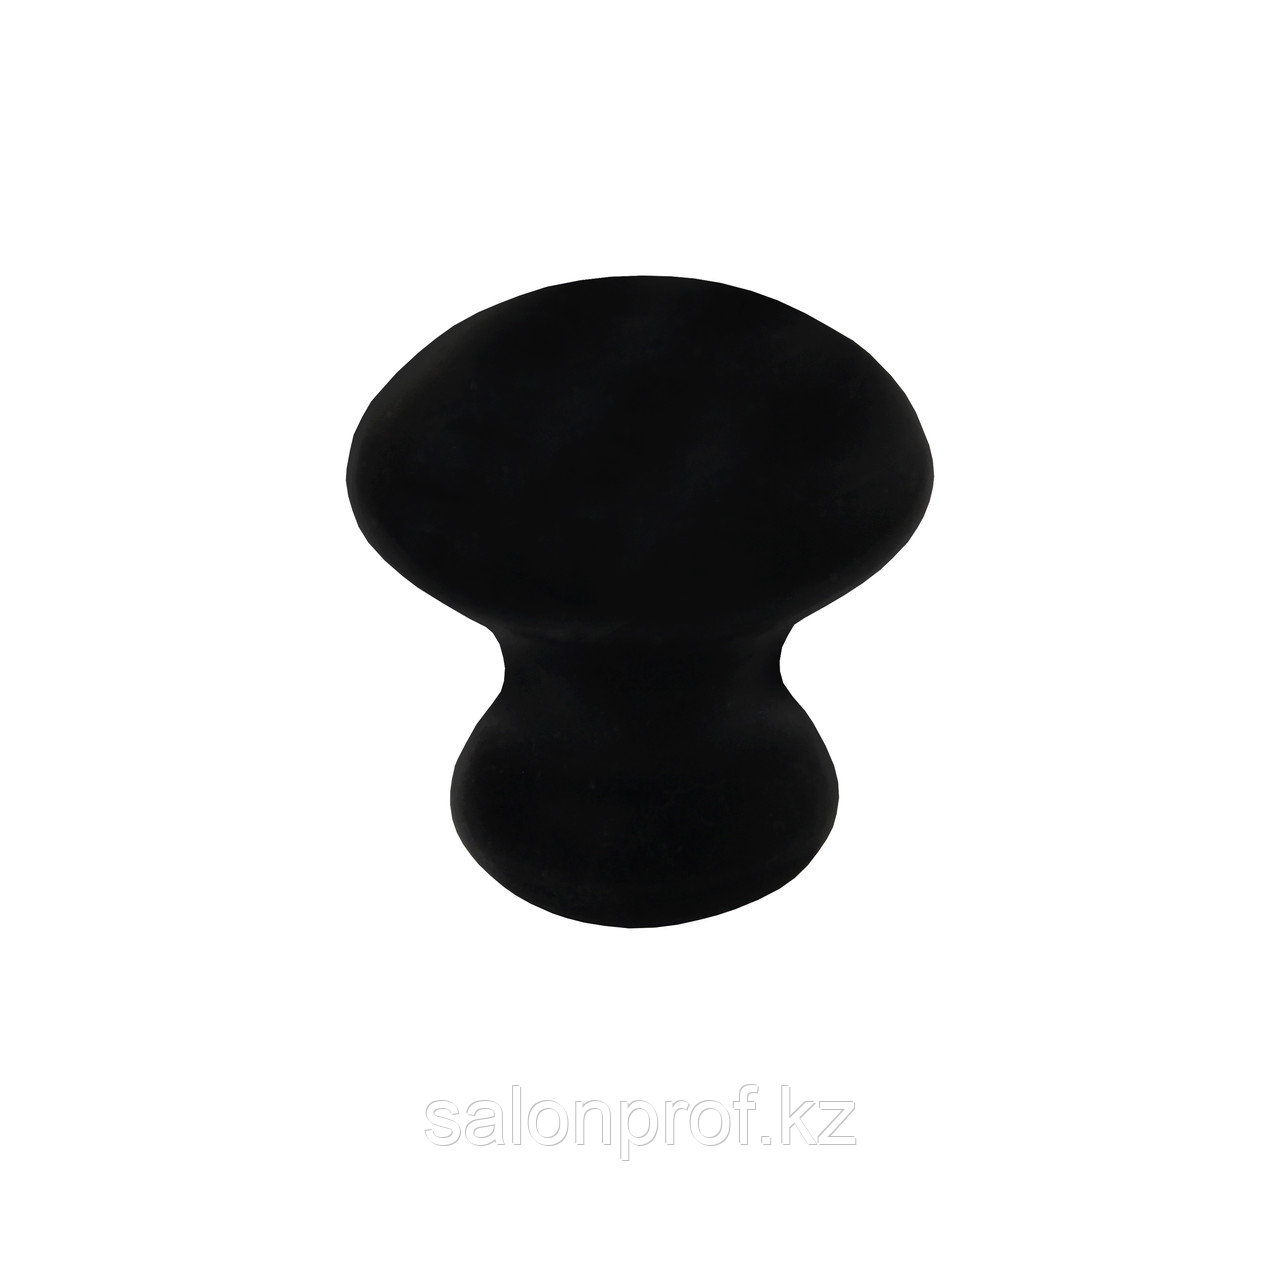 Камень для гуаша базальтовый круглый черный (гриб) №97060(2)